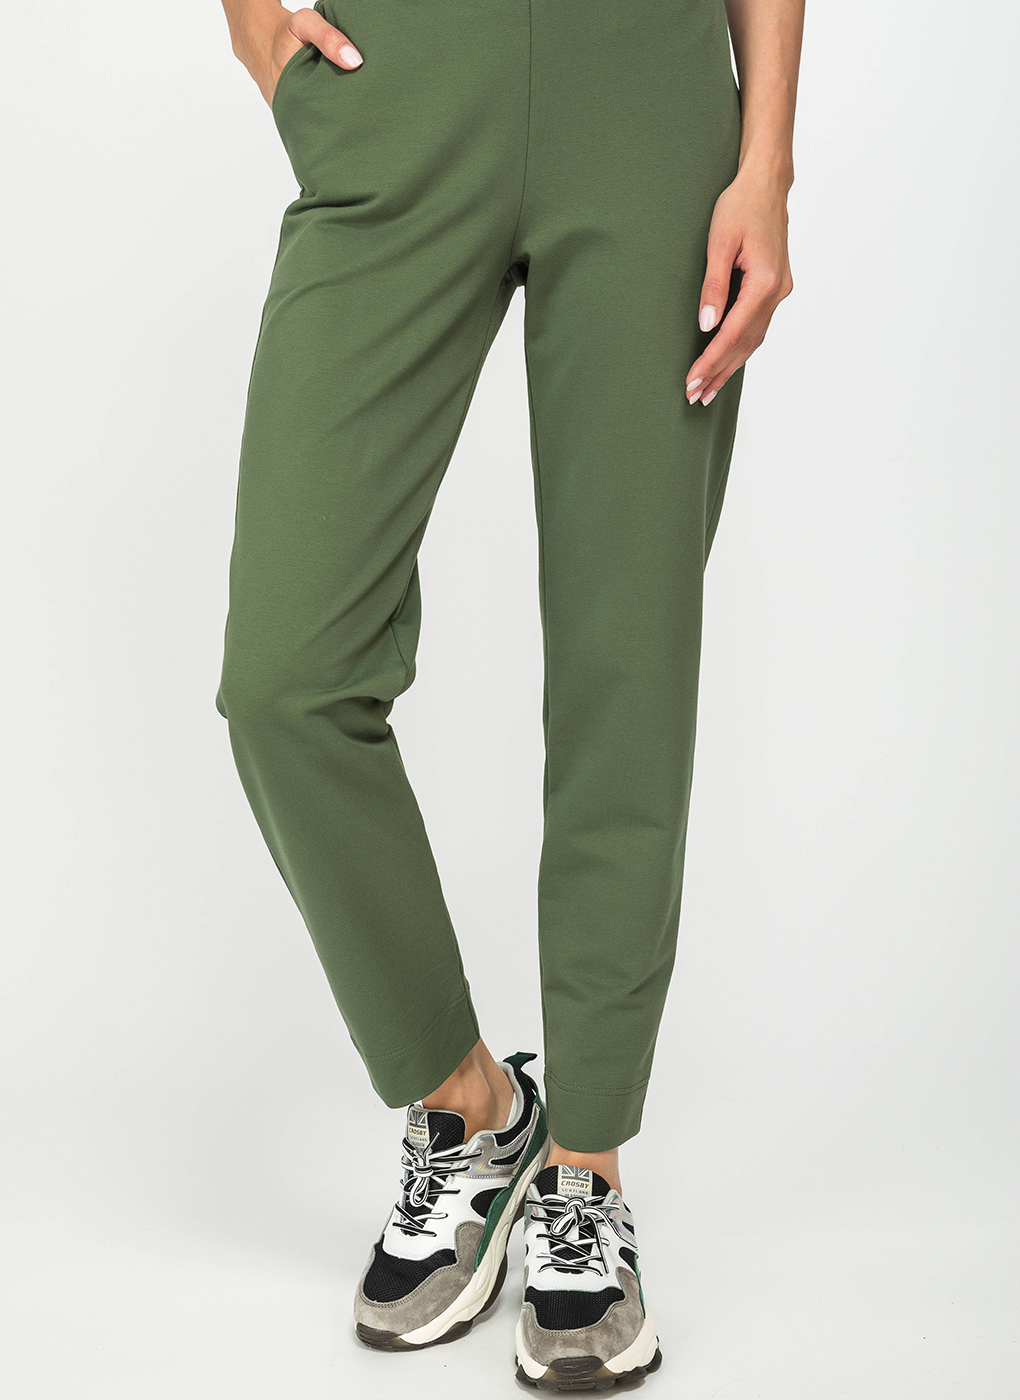 Спортивные брюки женские Каляев 61116 зеленые 44 RU